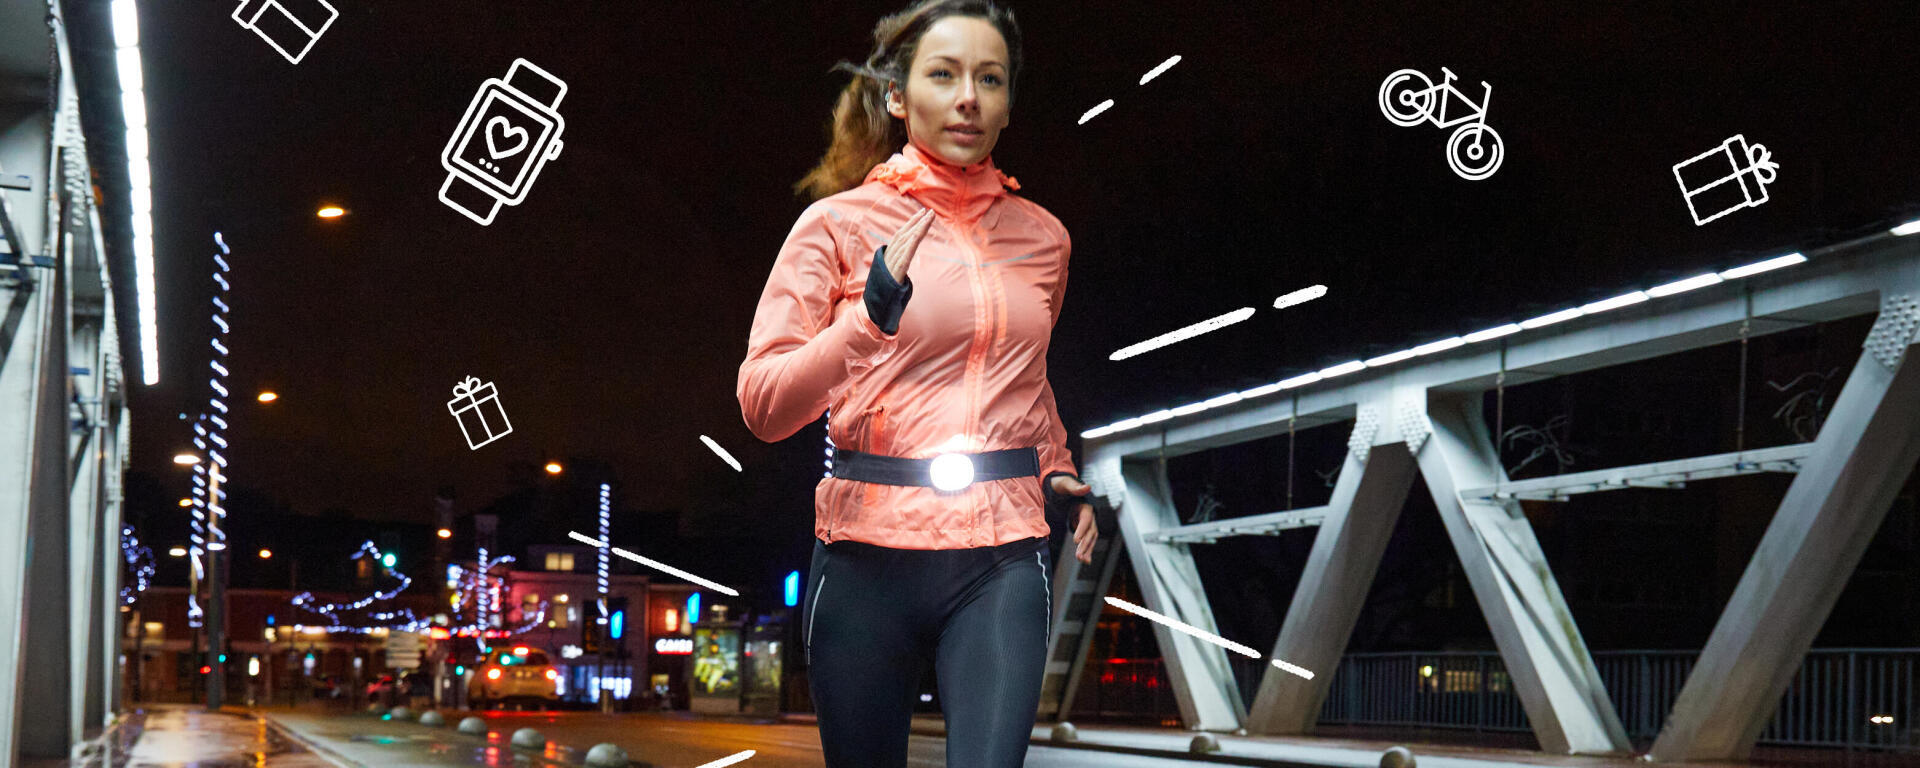 rapariga a correr de noite com equipamento decathlon